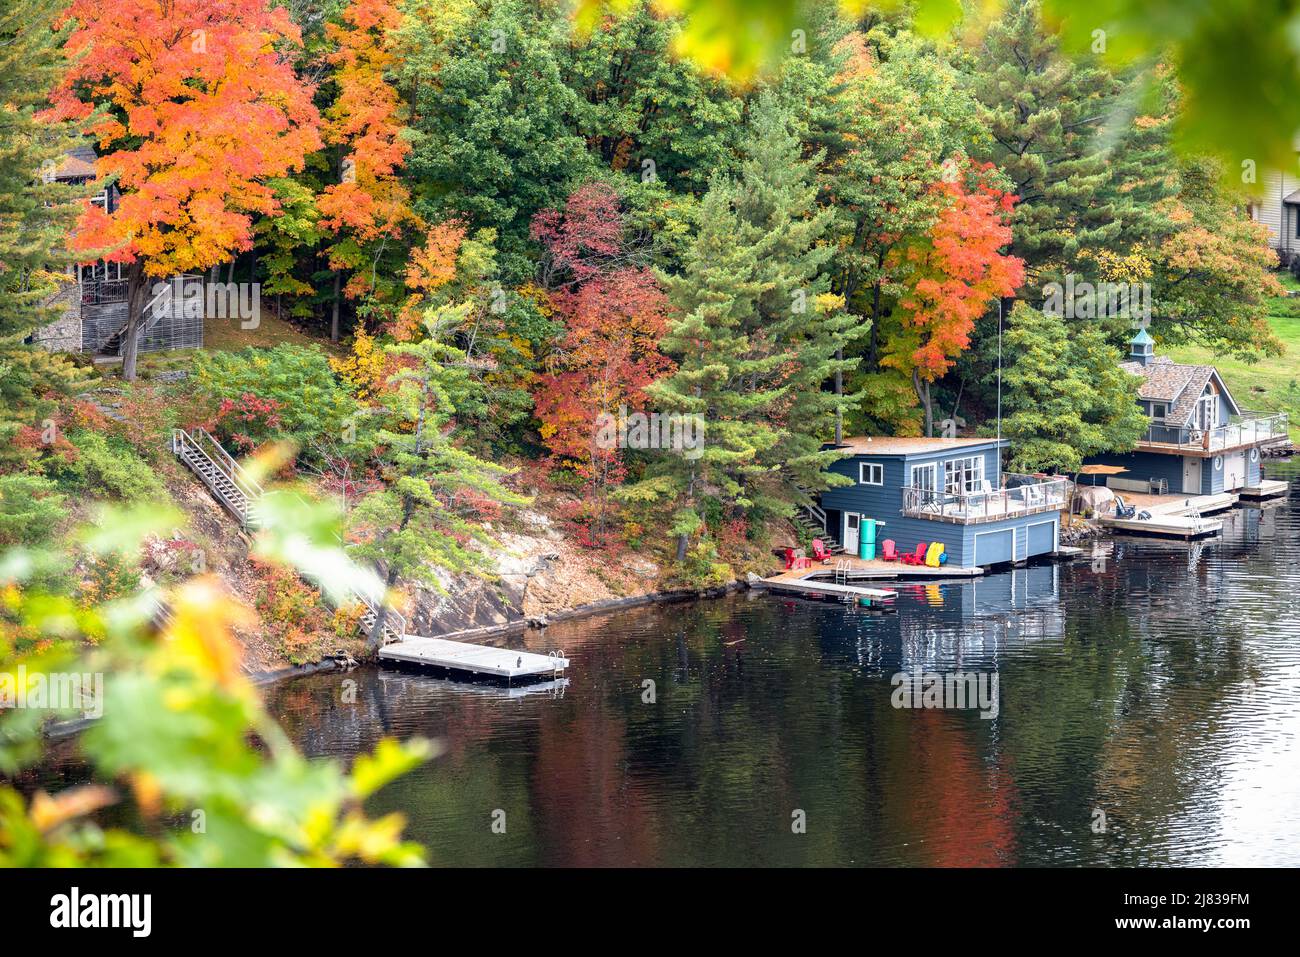 Bootshäuser und Anlegestege am felsigen Ufer eines Sees im Herbst. Herbstlaub. Fairy Lake, ON, Kanada. Stockfoto